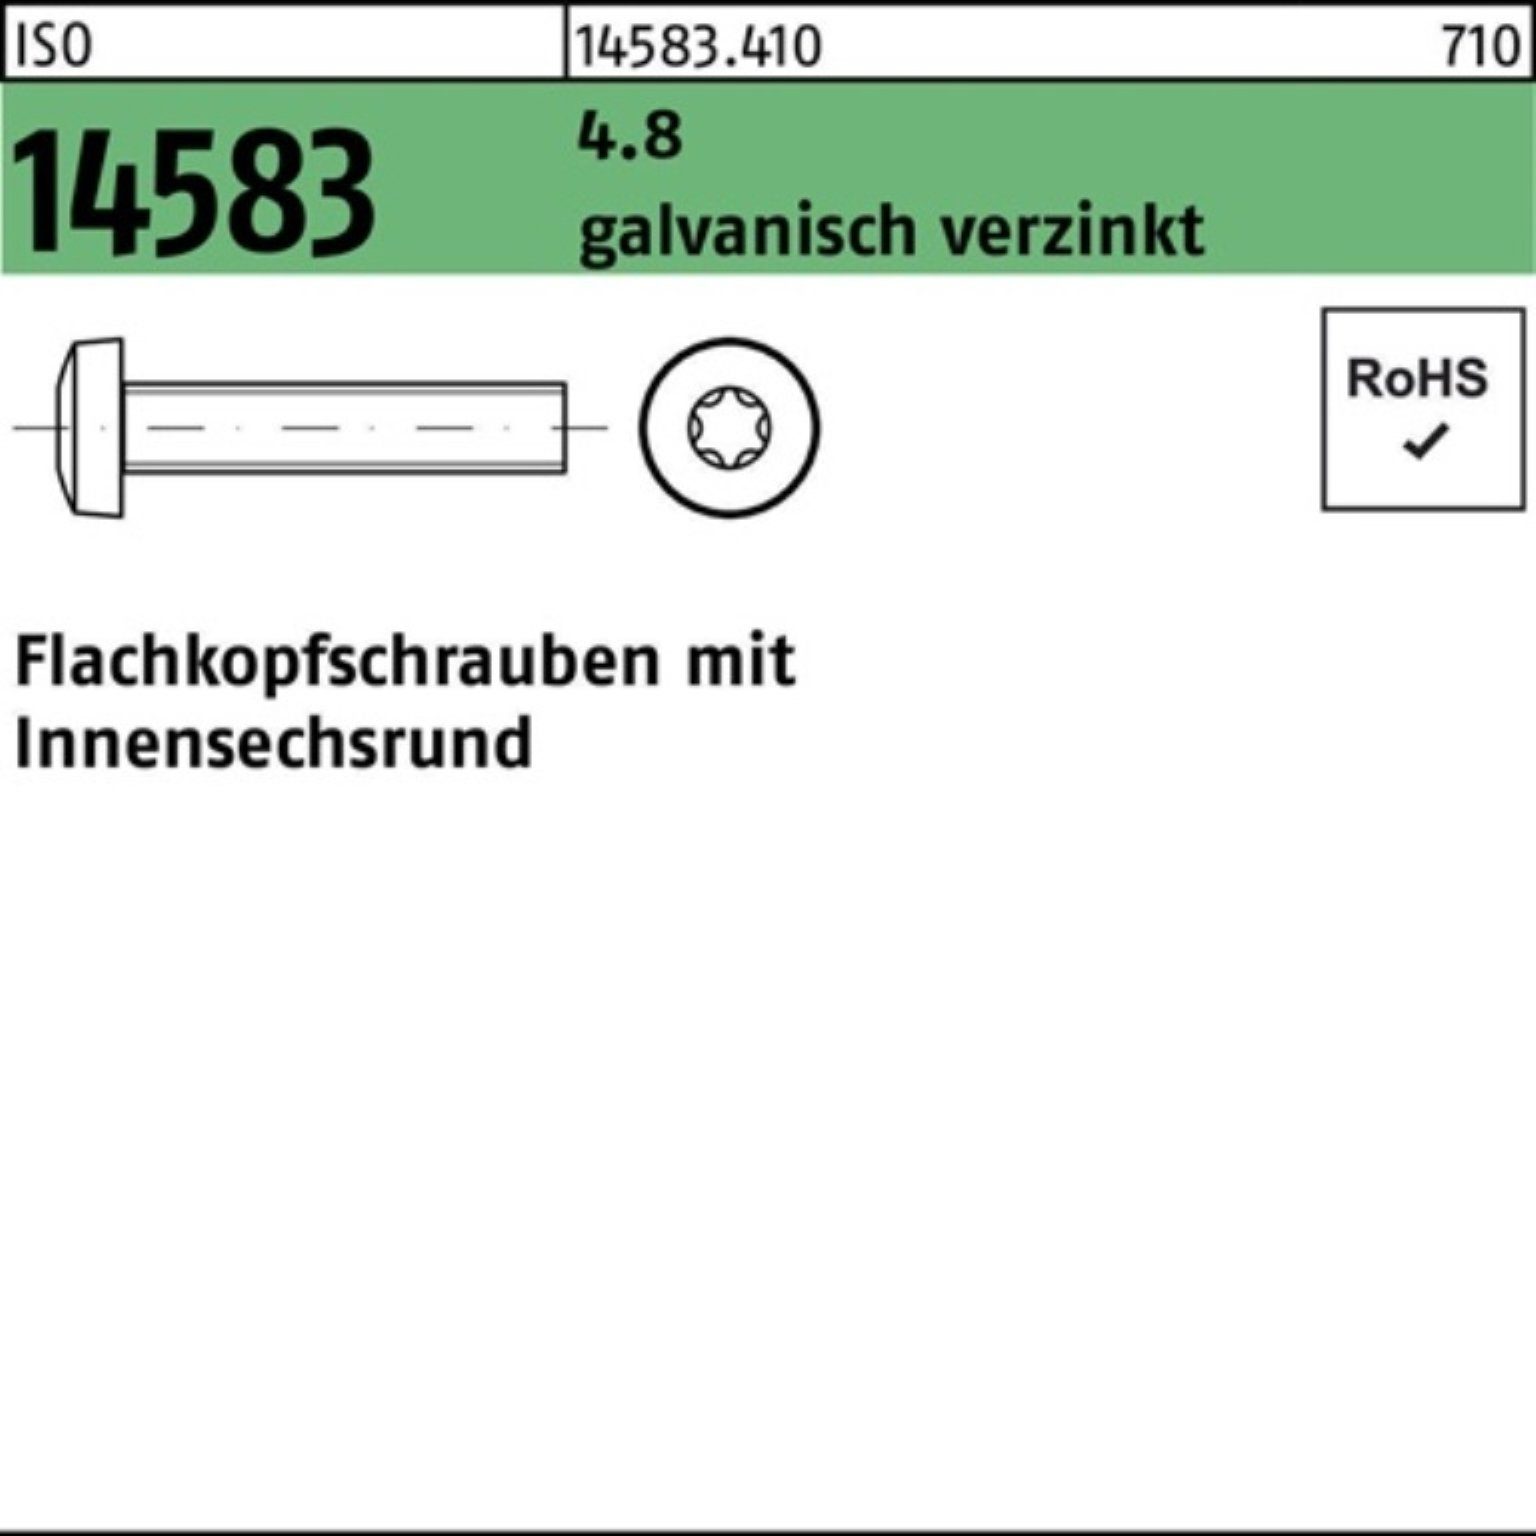 Reyher Schraube 1000er Pack 4.8 M5x25 galv.verz. ISR Flachkopfschraube 14583 1000S ISO